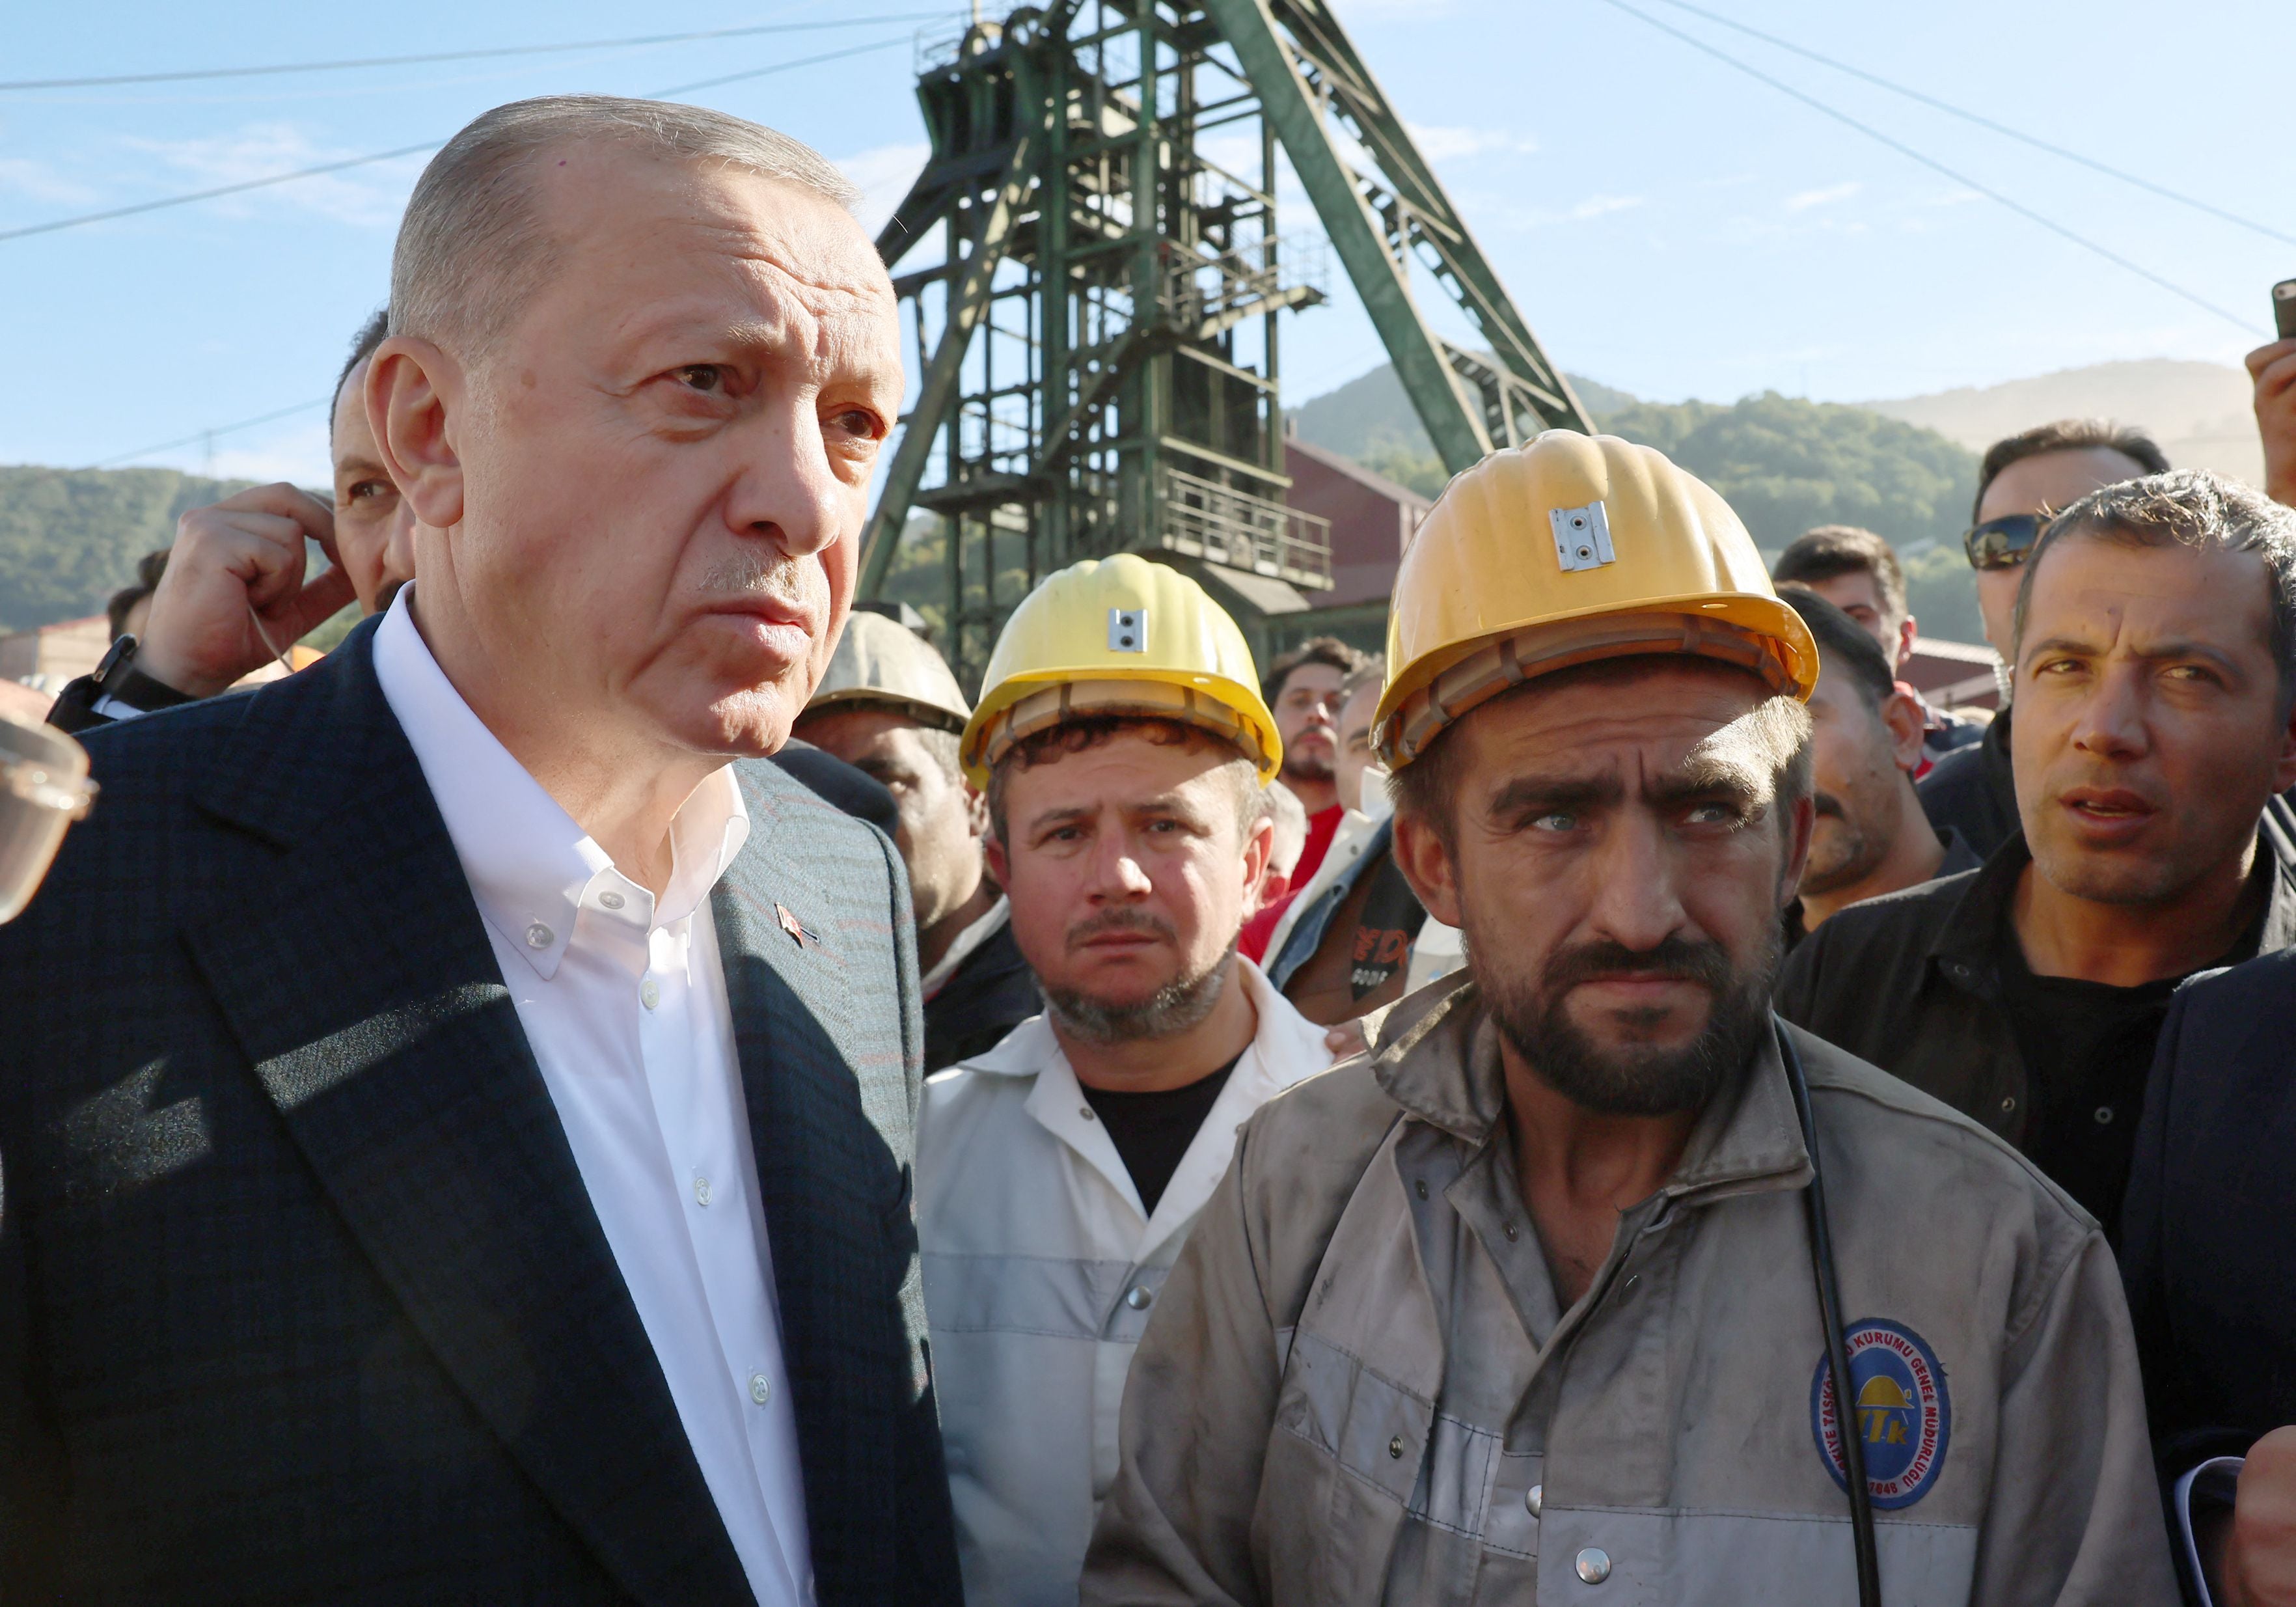 El presidente turco, Recep Tayyip Erdogan, se reúne con mineros en el lugar de la explosión mortal